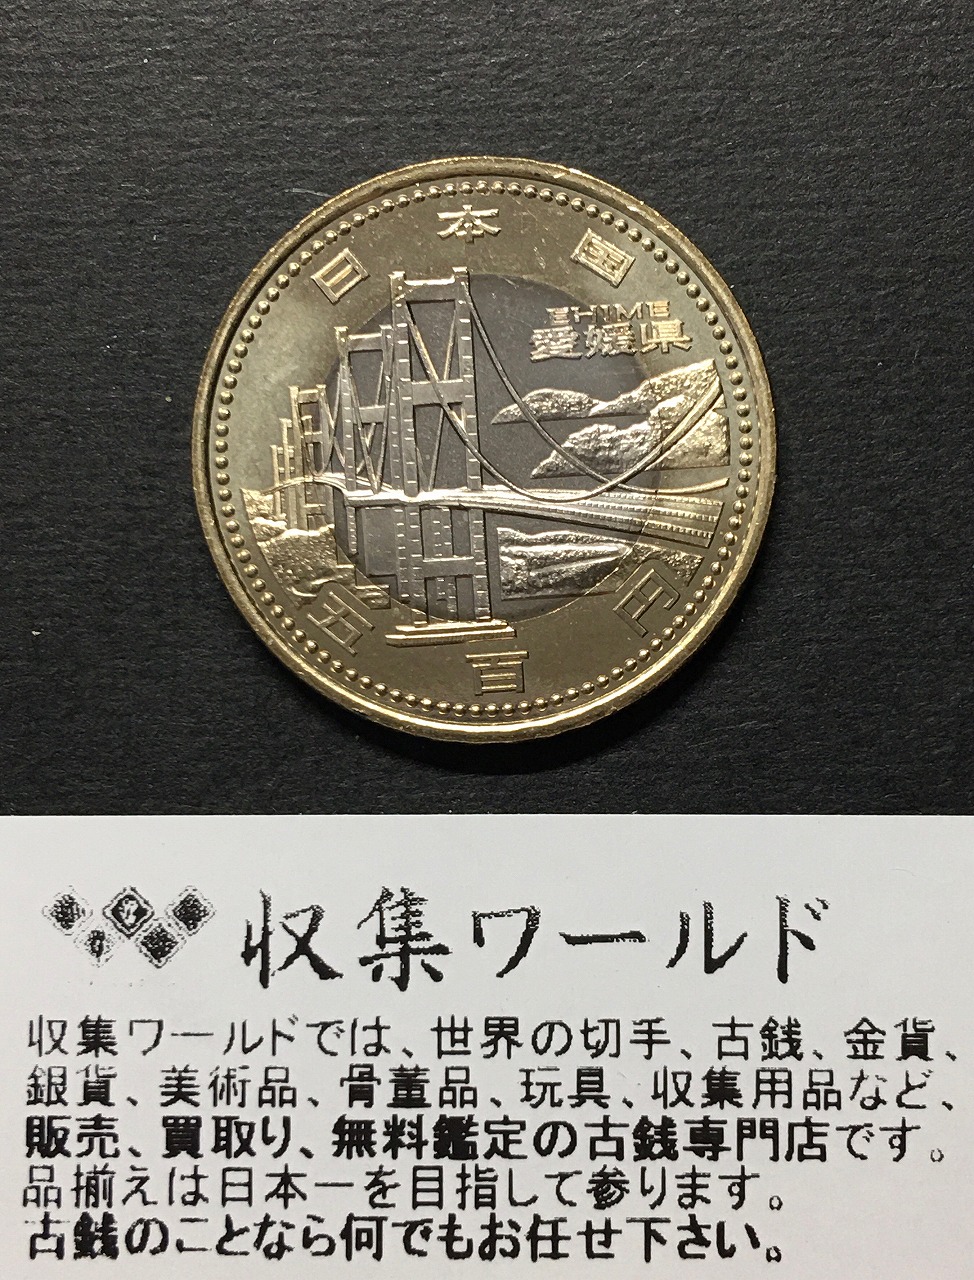 500円バイカラークラッド貨 地方自治法施行60周年記念貨幣 愛媛県